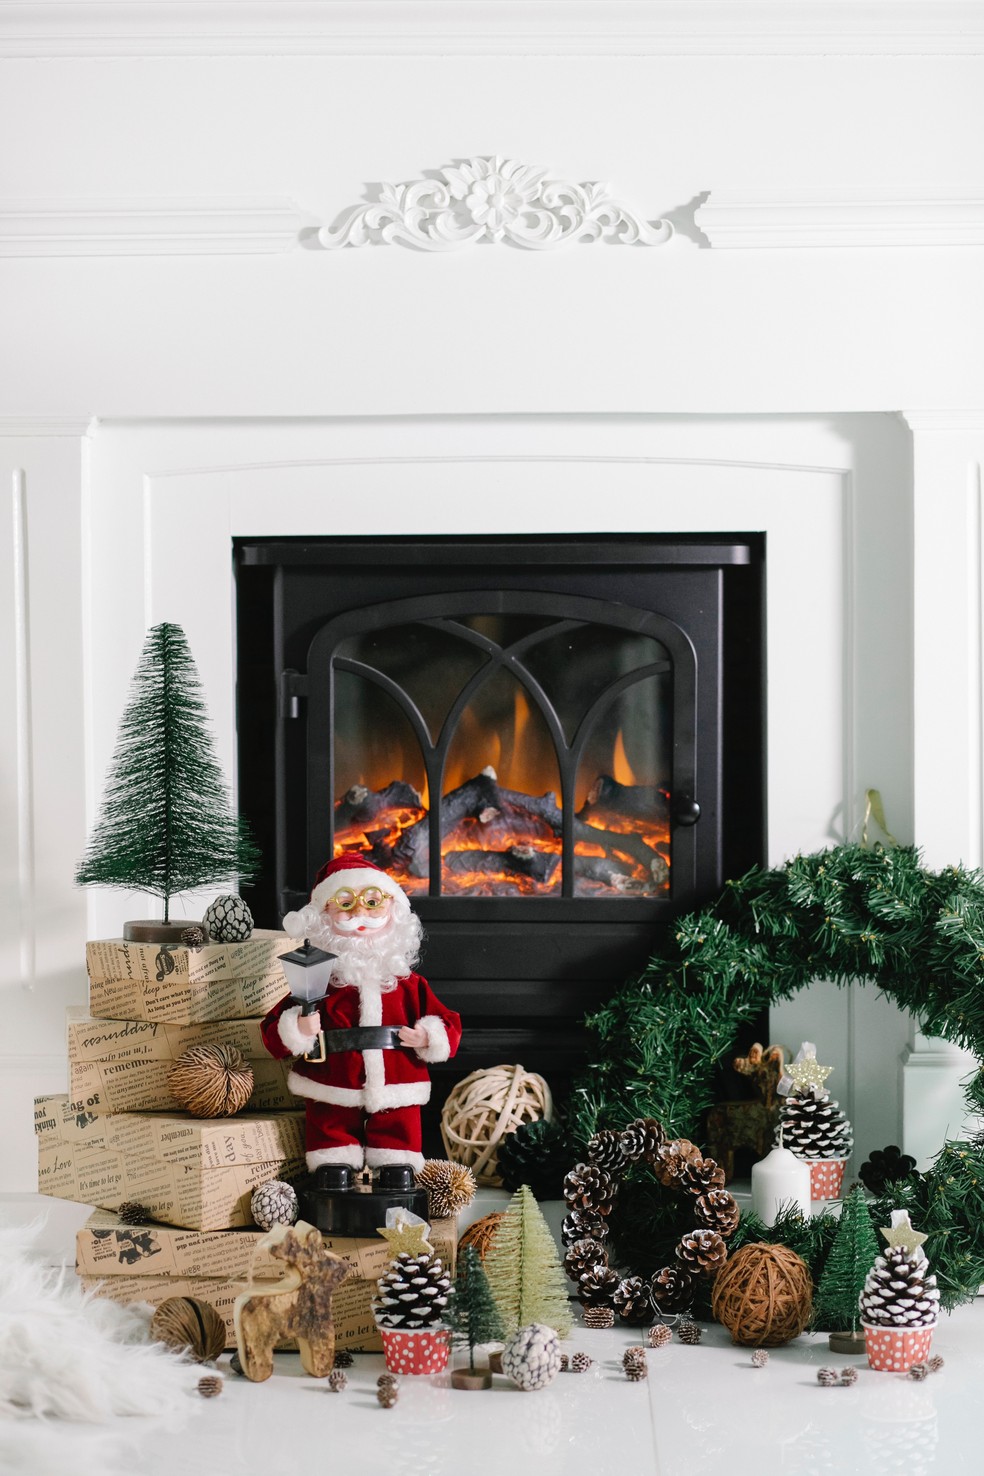 Lareira usada como centro de decoração para a casa no Natal — Foto: Laura James/Pexels